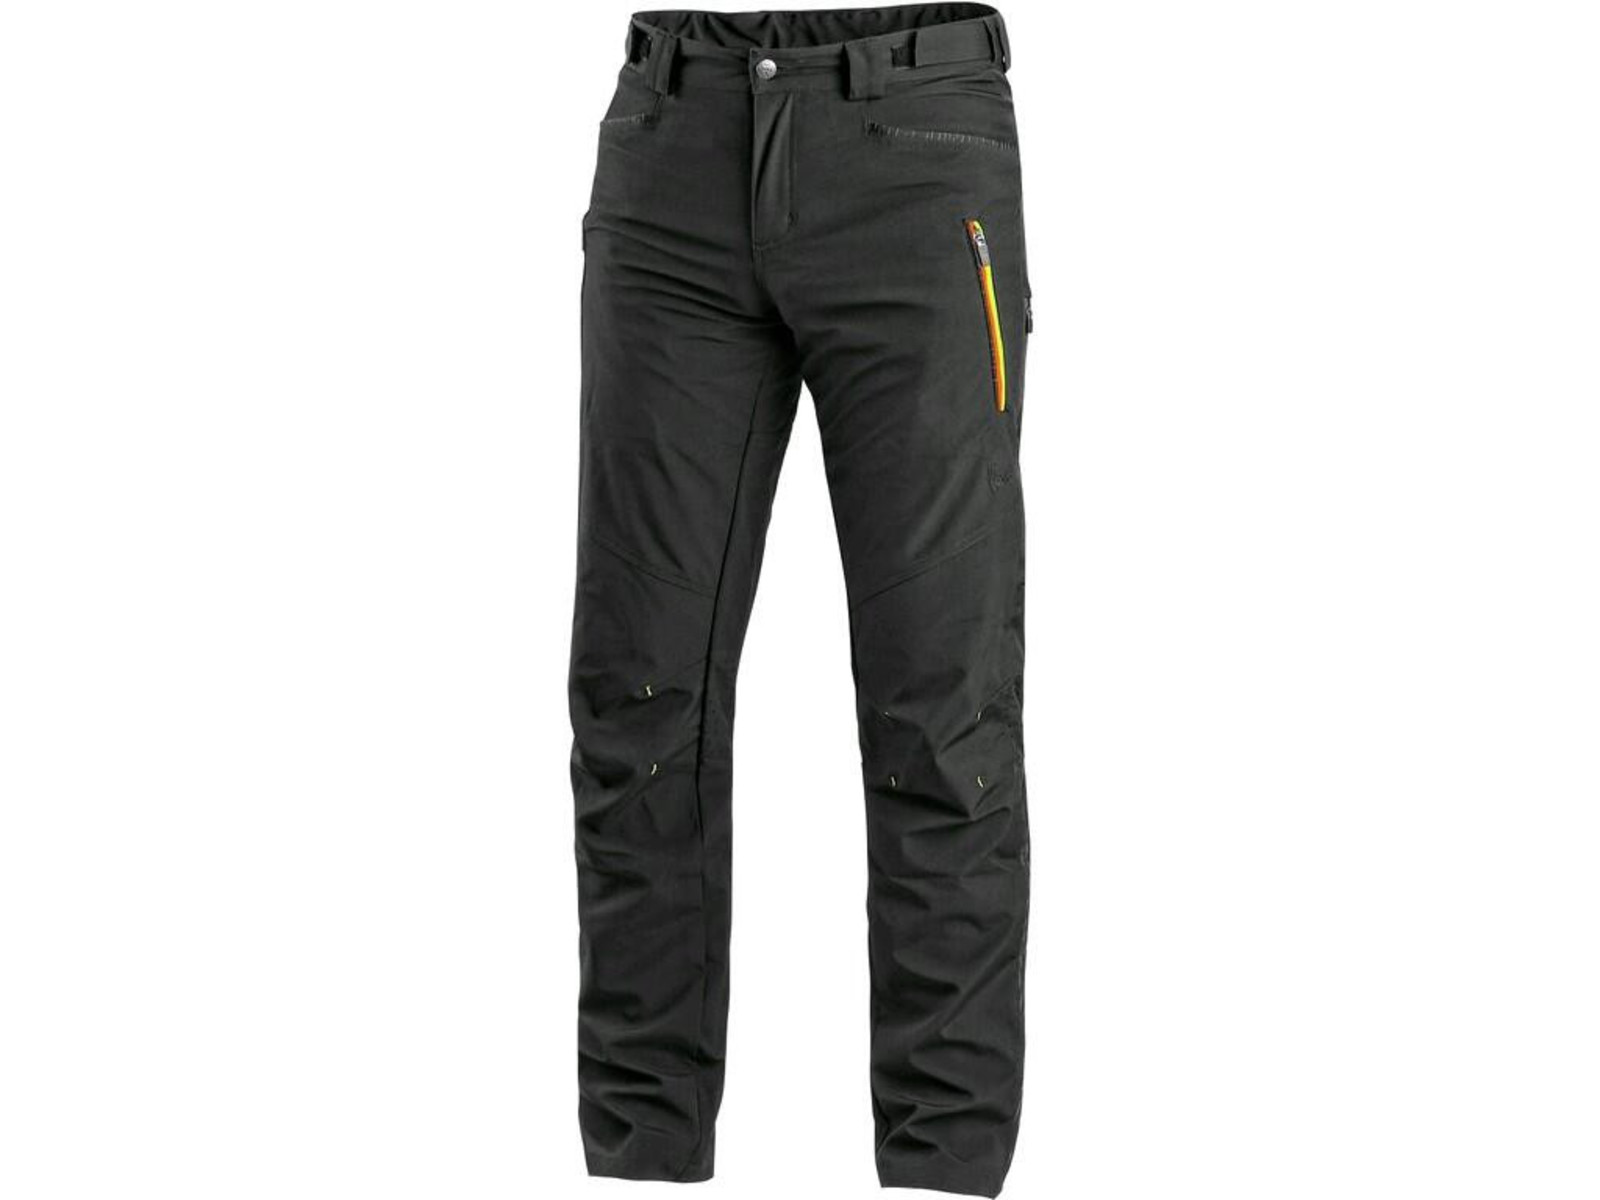 Pánske softshellové nohavice CXS Akron - veľkosť: 54, farba: čierna/žltá